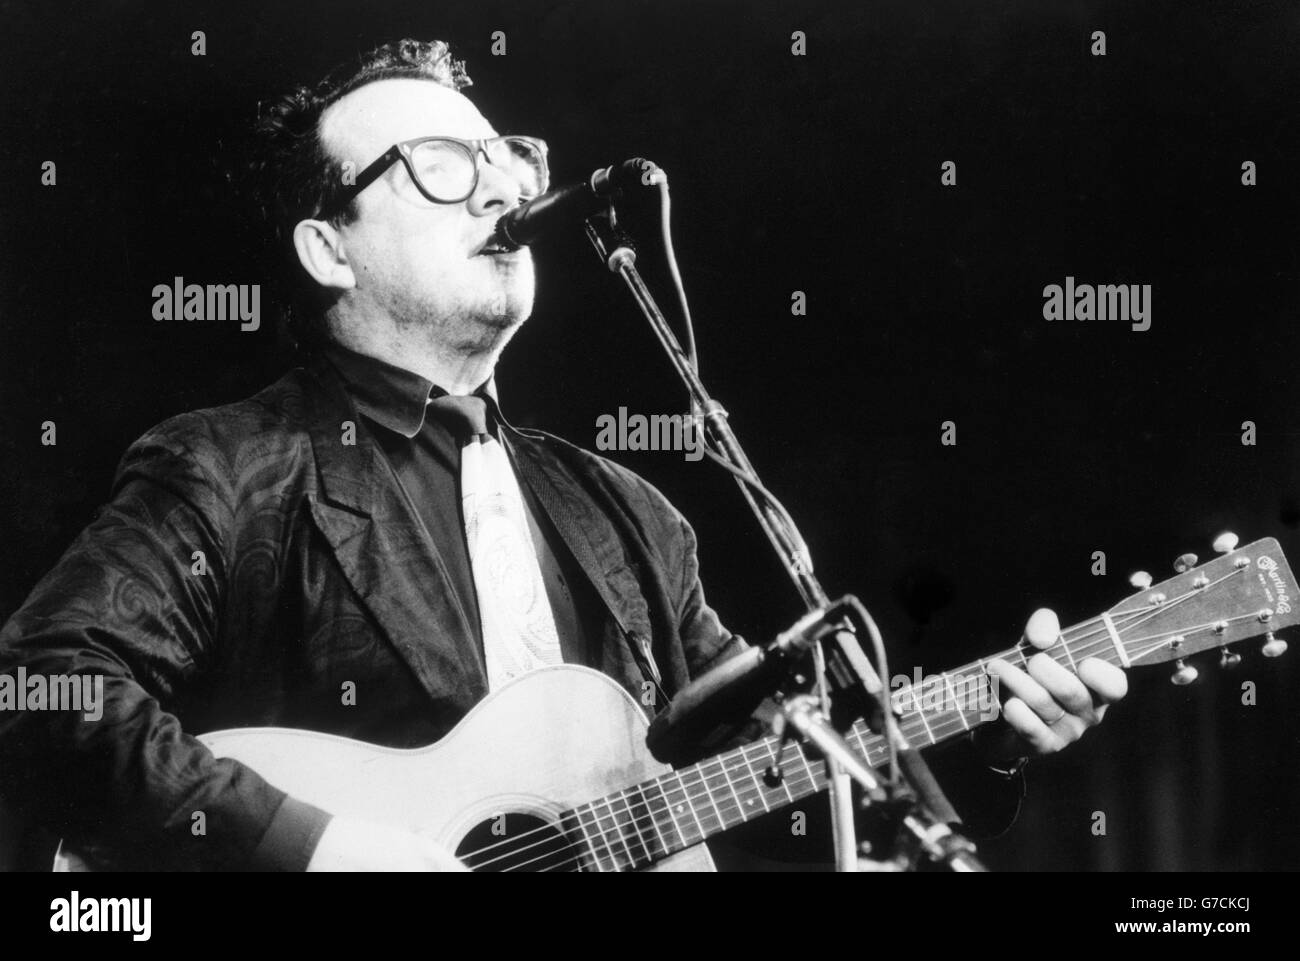 Musica - Elvis Costello - Seinajoki, Finlandia. Il musicista Elvis Costello si esibisce in un concerto all'aperto a Seinajoki, Finlandia. Foto Stock